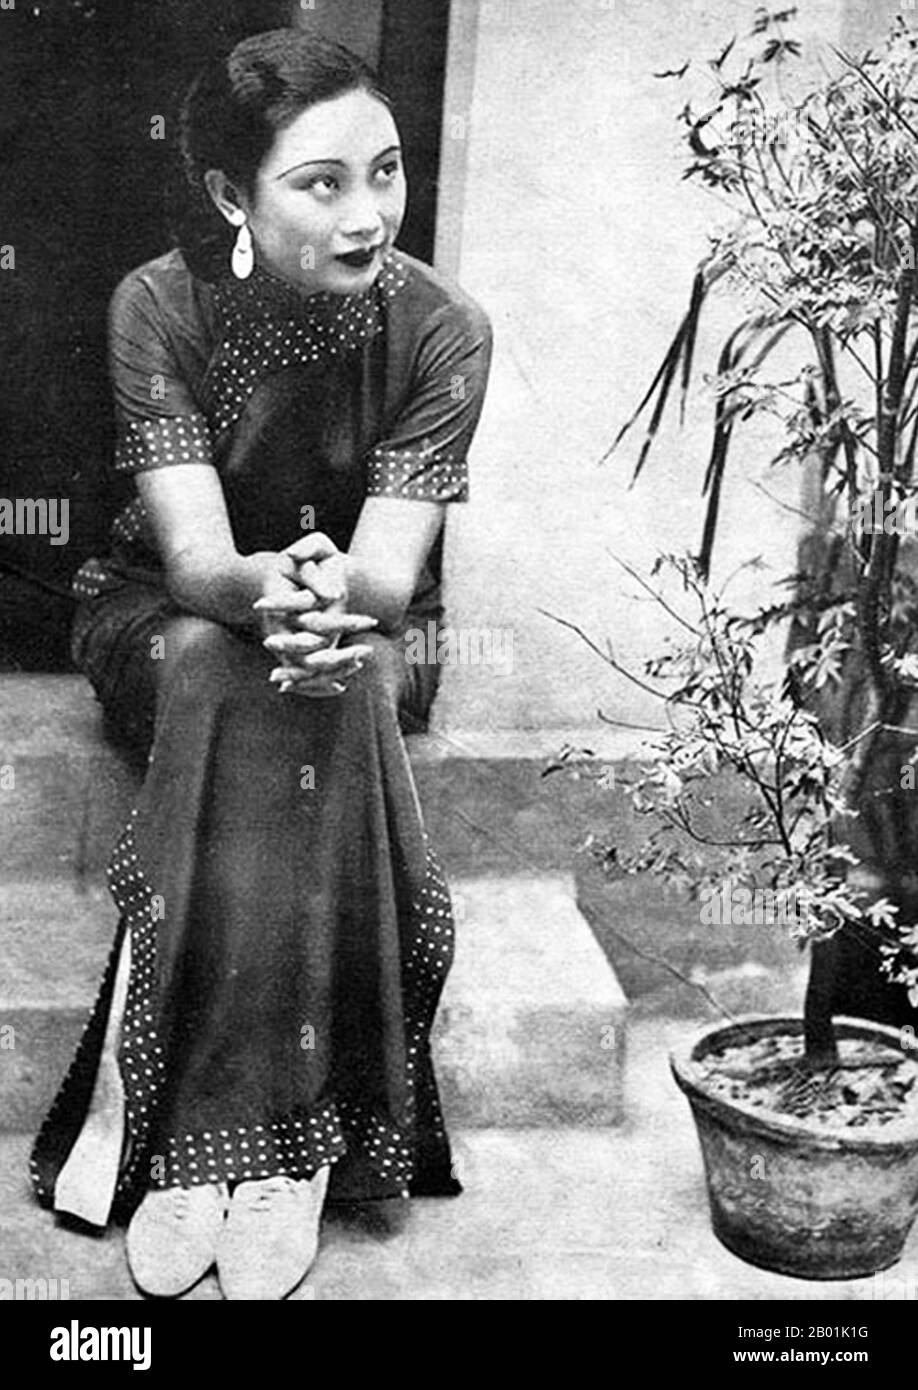 Cina: L'attrice di Shanghai Hu Die (23 marzo 1908 - 23 aprile 1989), nota anche come "Butterfly Hu", c. 1930s. HU Die, nata Hu Ruihua, ha avuto una carriera come attrice cinematografica dalla fine degli anni '1920 agli anni '1960 Ha avuto il suo periodo più brillante negli anni '1930 e '1940 All'inizio degli anni '1930, ha interpretato il ruolo principale nel primo film sonoro cinese, The SingSong Girl, in cui ritrae una donna gentile ma in qualche modo ignorante che sopporta i maltrattamenti e l'oppressione di suo marito senza la minima resistenza. Foto Stock